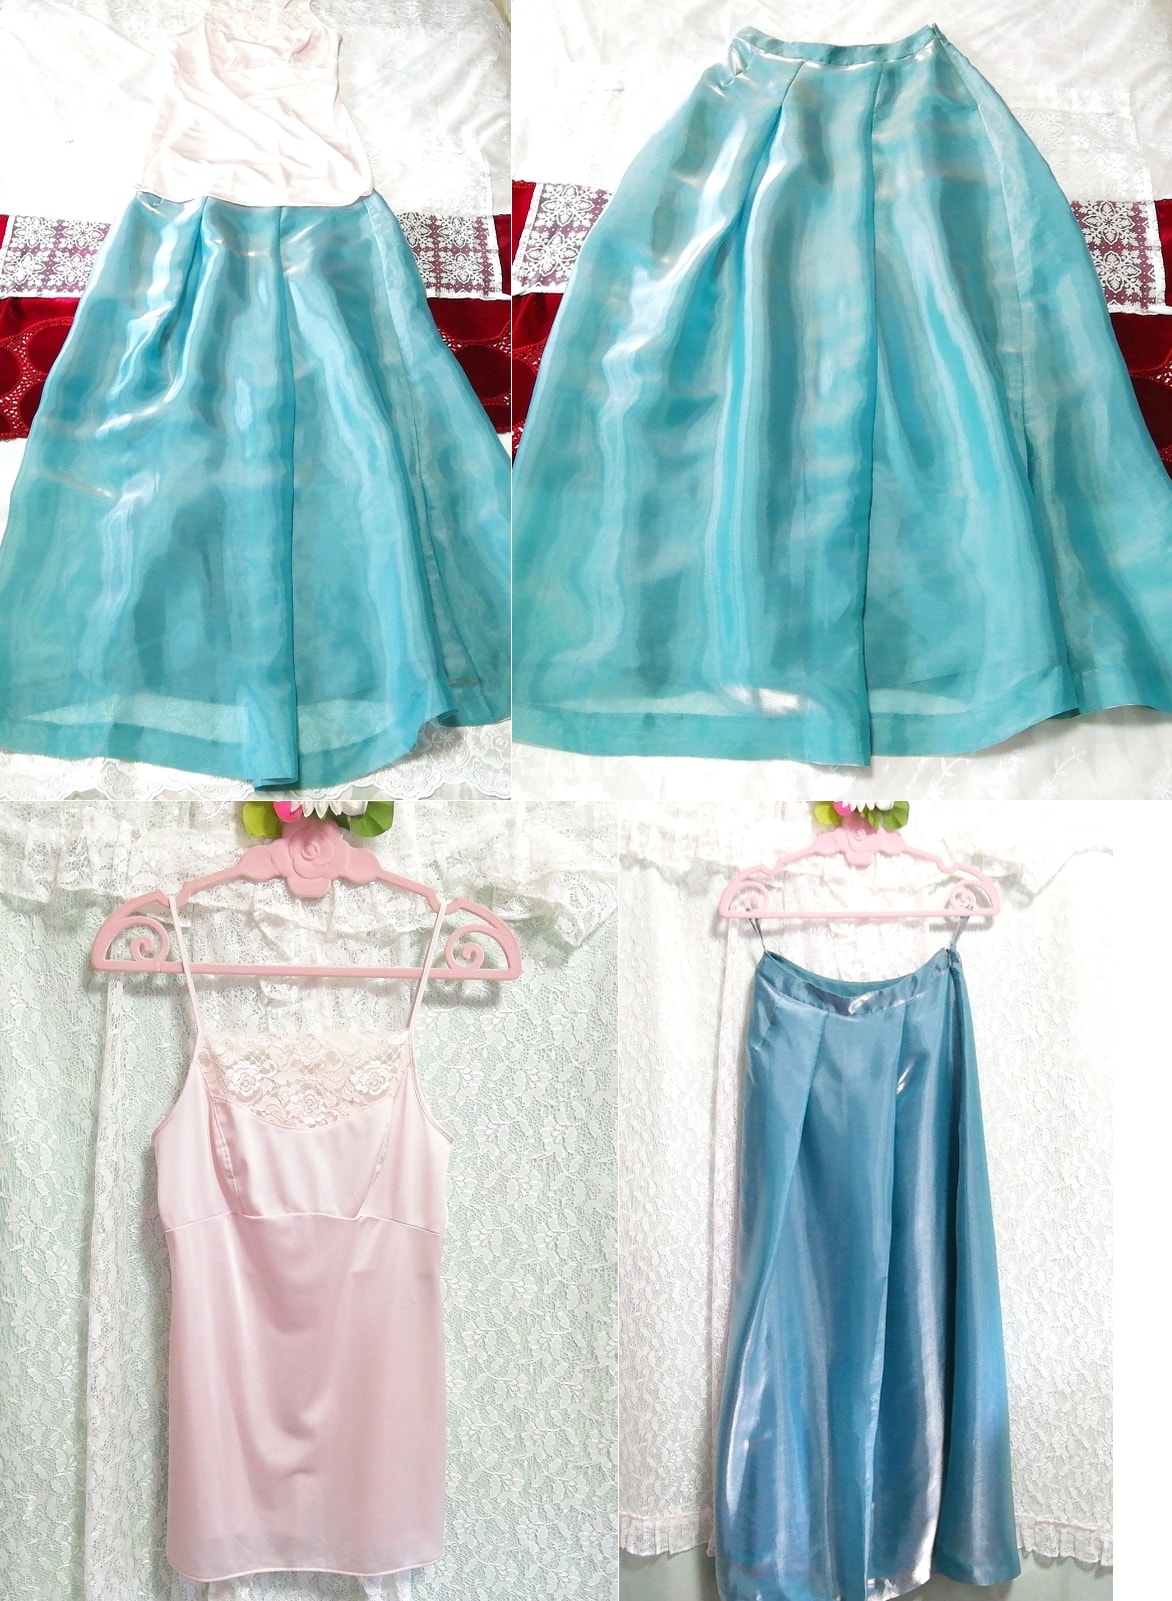 ピンクキャミソール ネグリジェ サテンマキシスカート 2P Pink camisole negligee satin maxi skirt, ファッション, レディースファッション, ナイトウエア、パジャマ